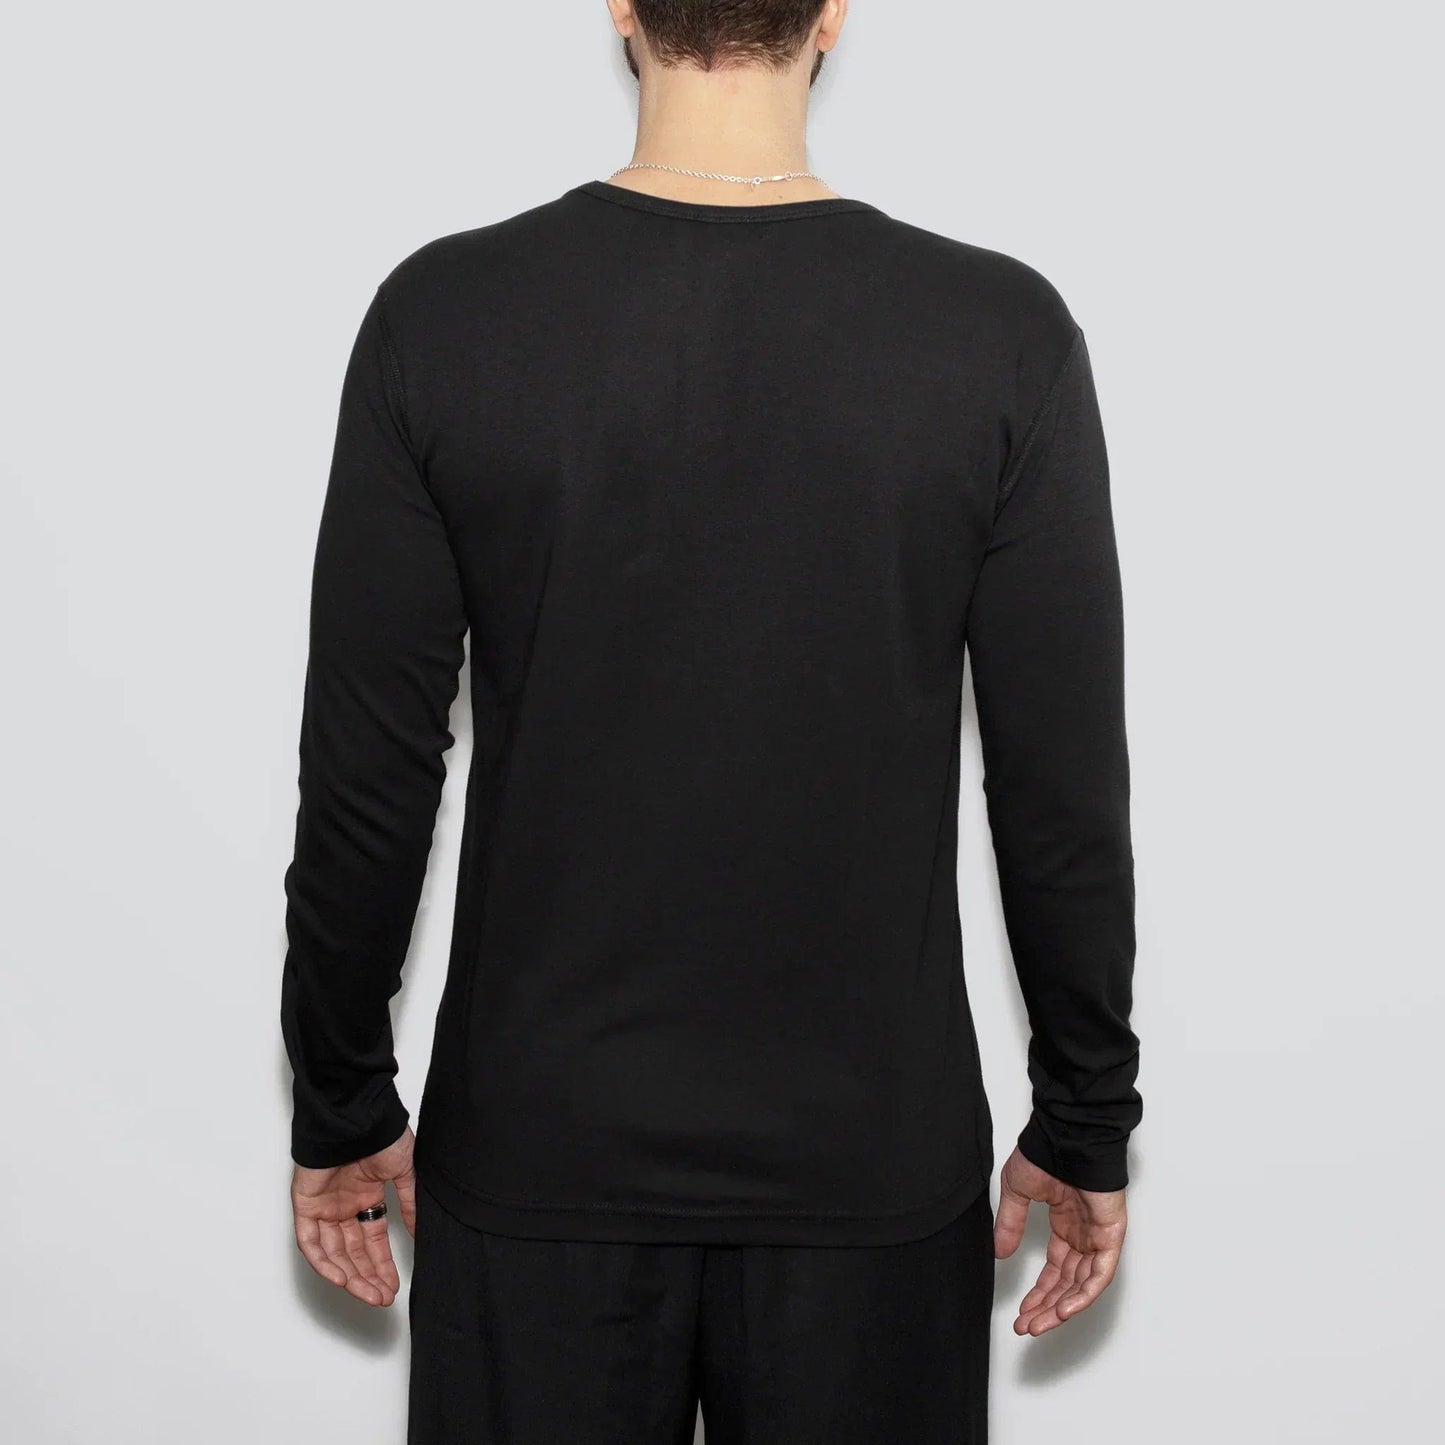 5-pack | Herrarnas återvunna bomullsrundhalsade långärmade tröjor, svarta